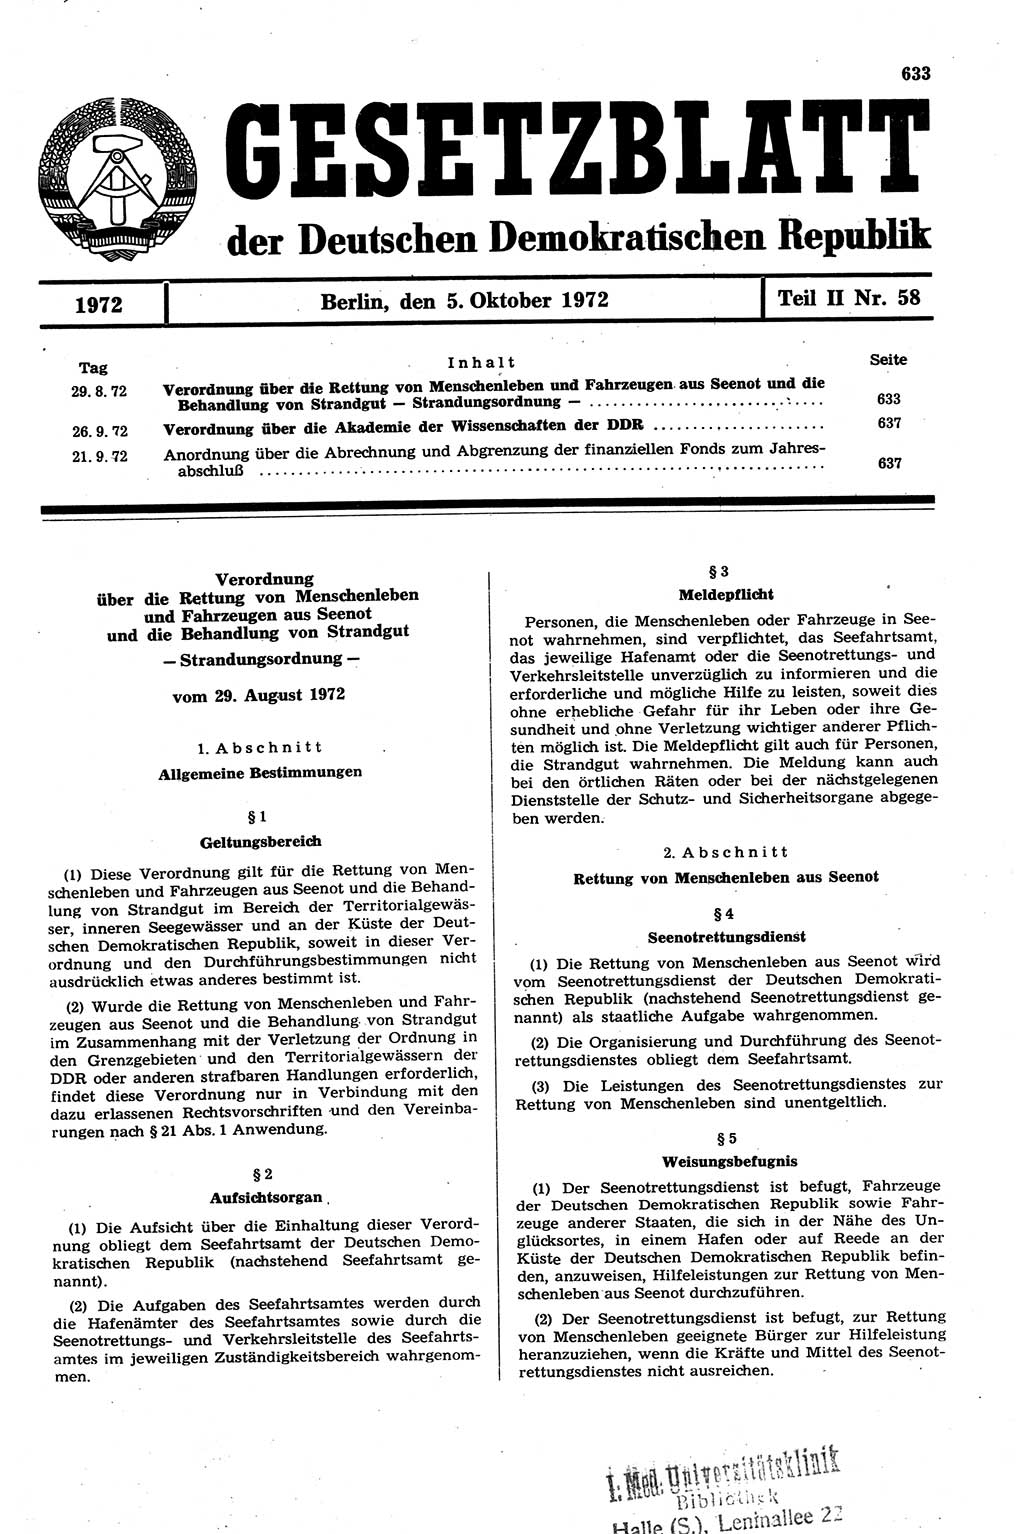 Gesetzblatt (GBl.) der Deutschen Demokratischen Republik (DDR) Teil ⅠⅠ 1972, Seite 633 (GBl. DDR ⅠⅠ 1972, S. 633)